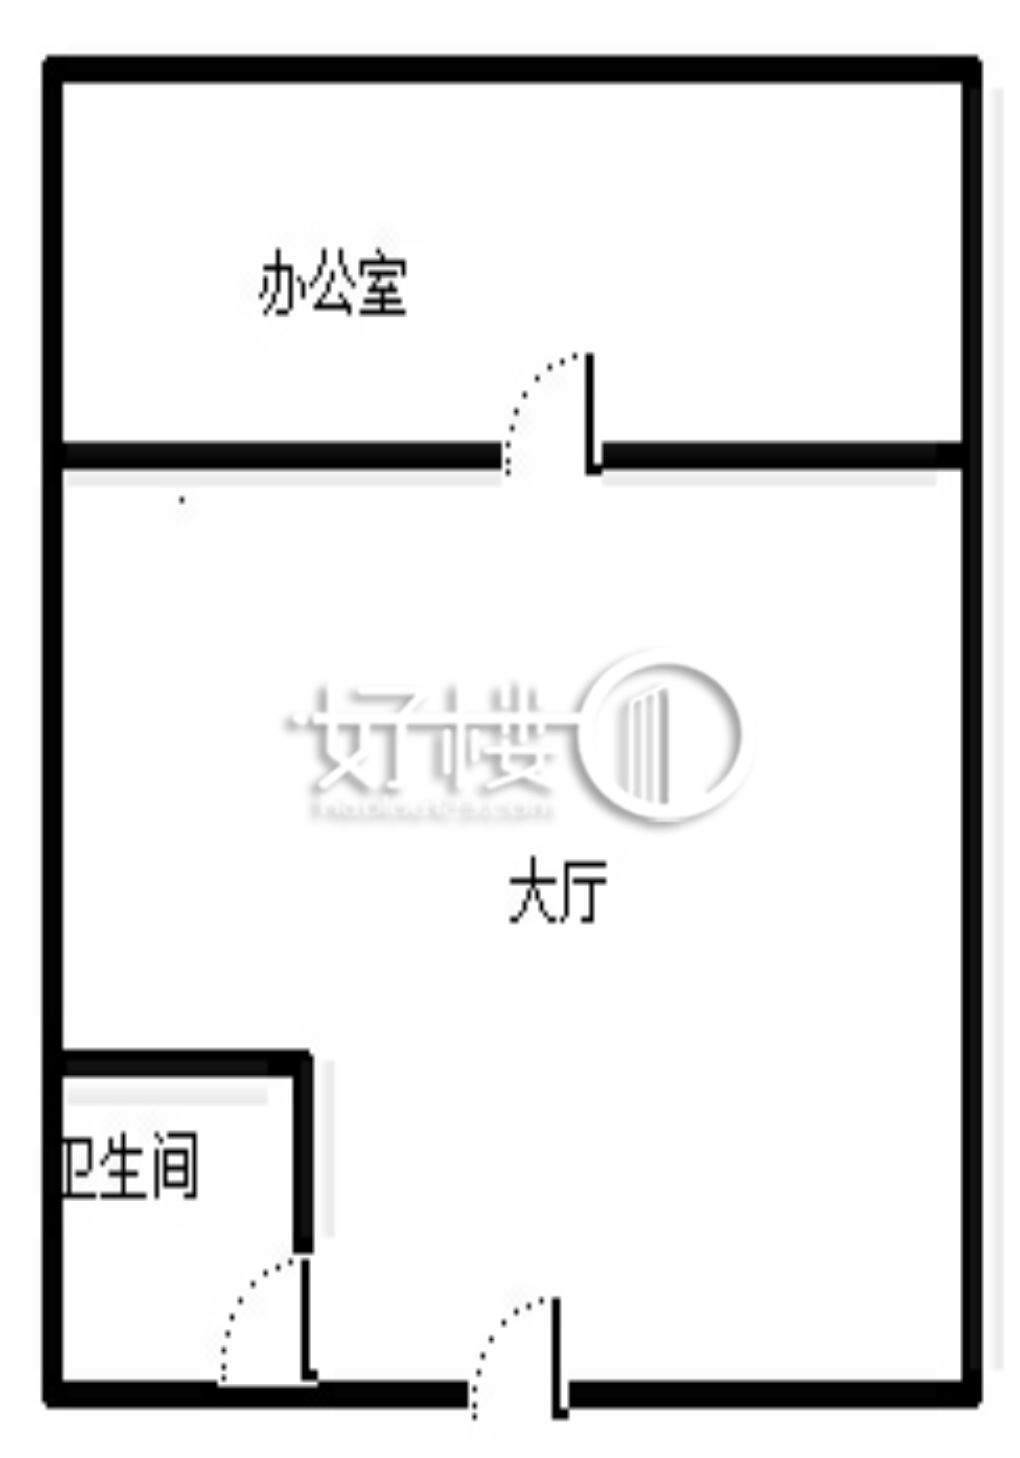 中渝国宾城12栋写字楼|办公室出租|租赁/租金/图片